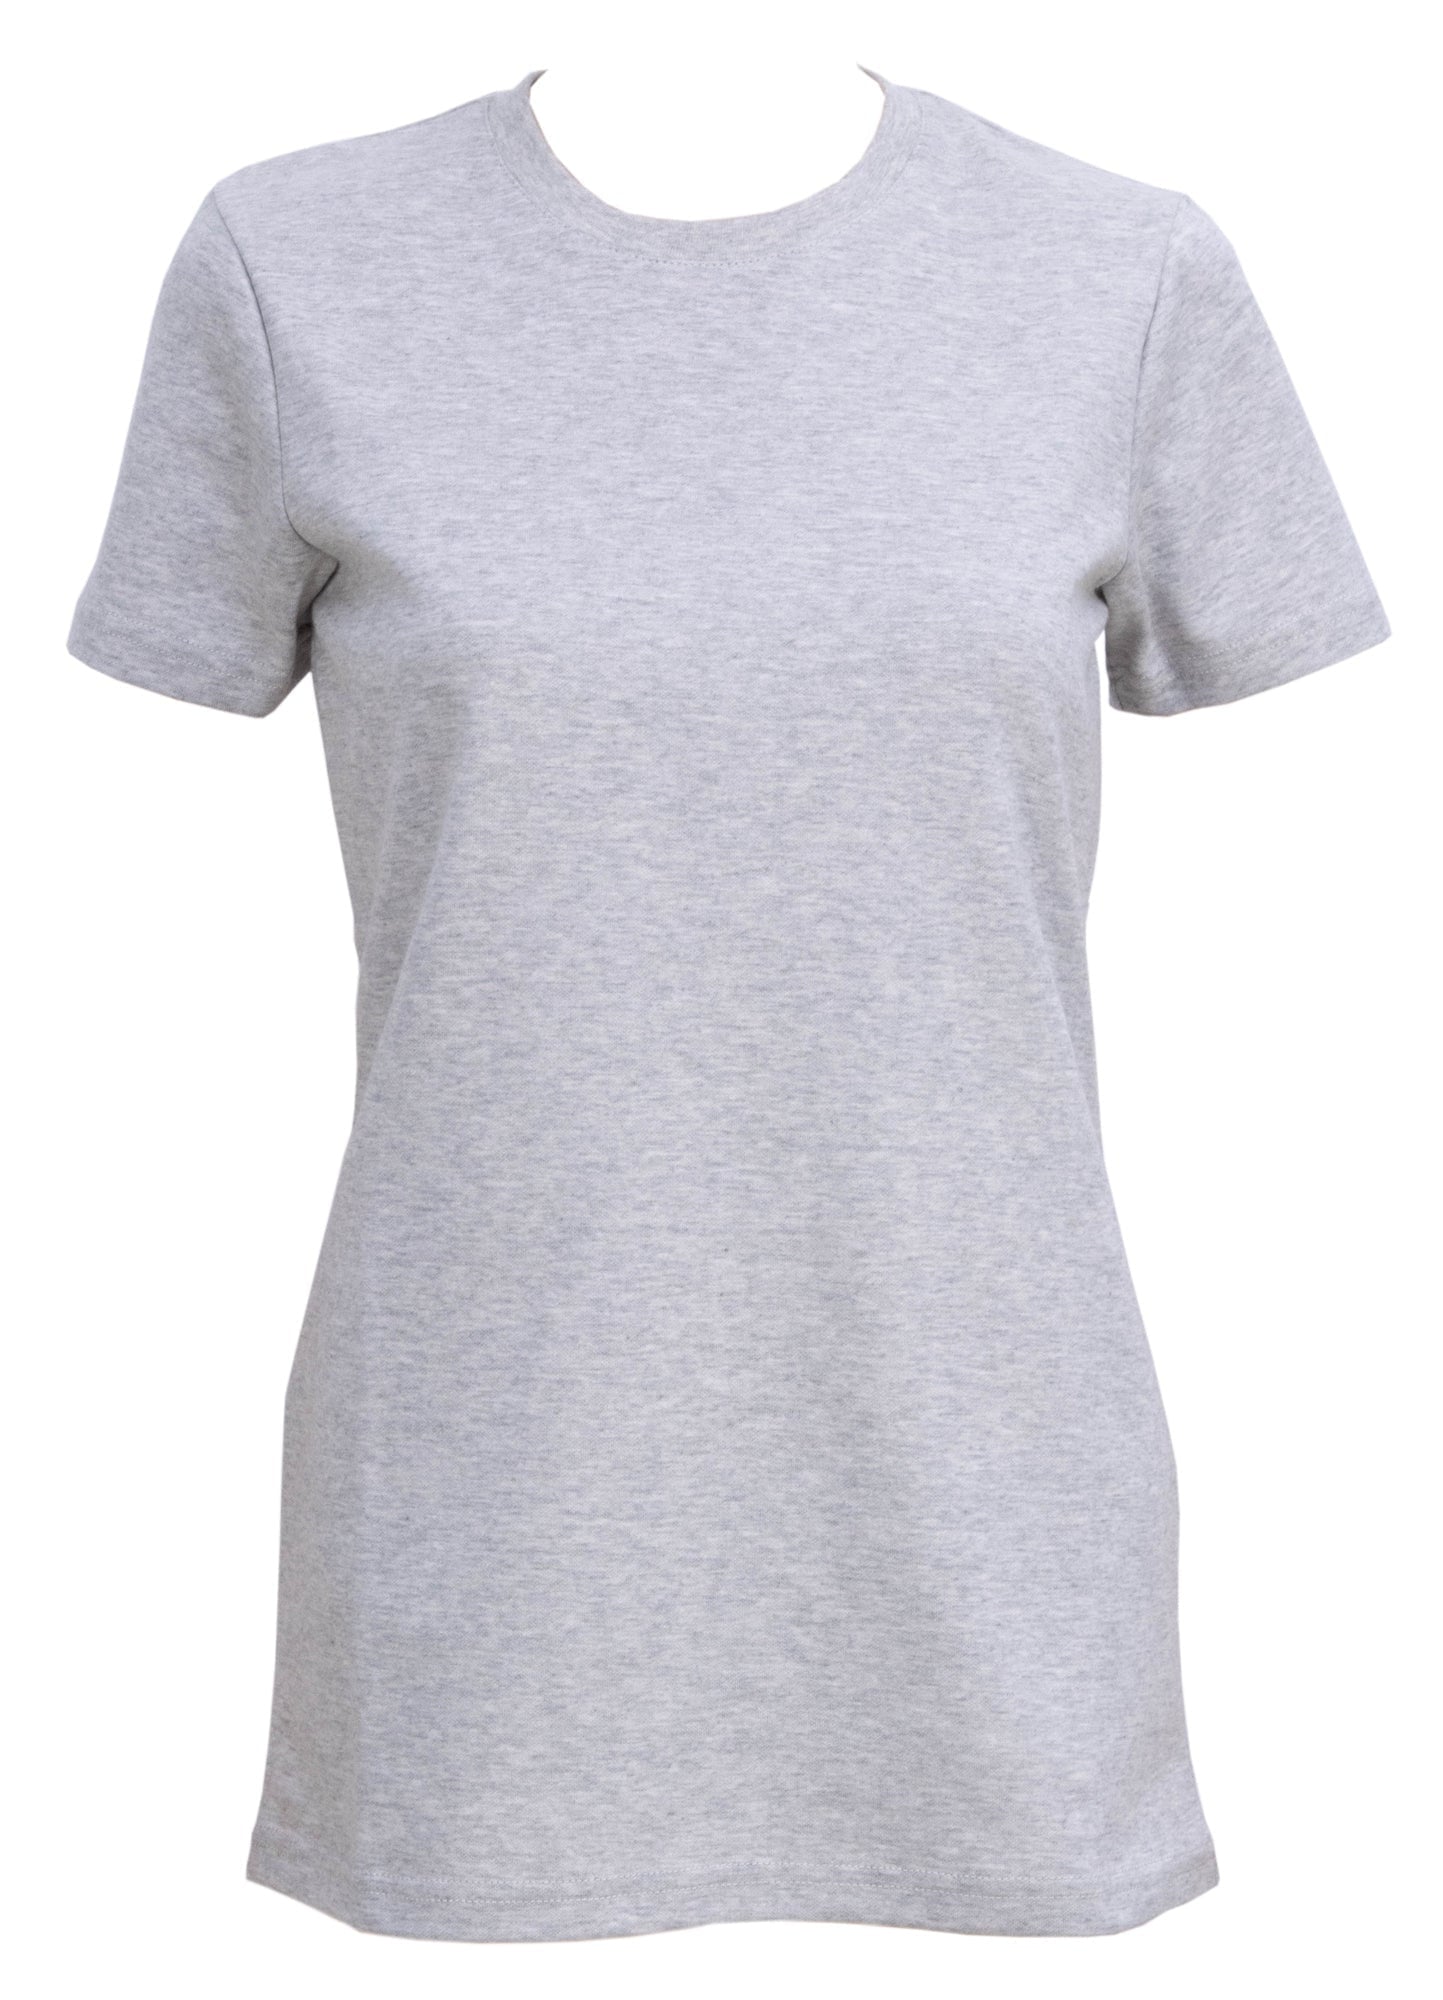 Women's EMF-Shielding T-Shirt